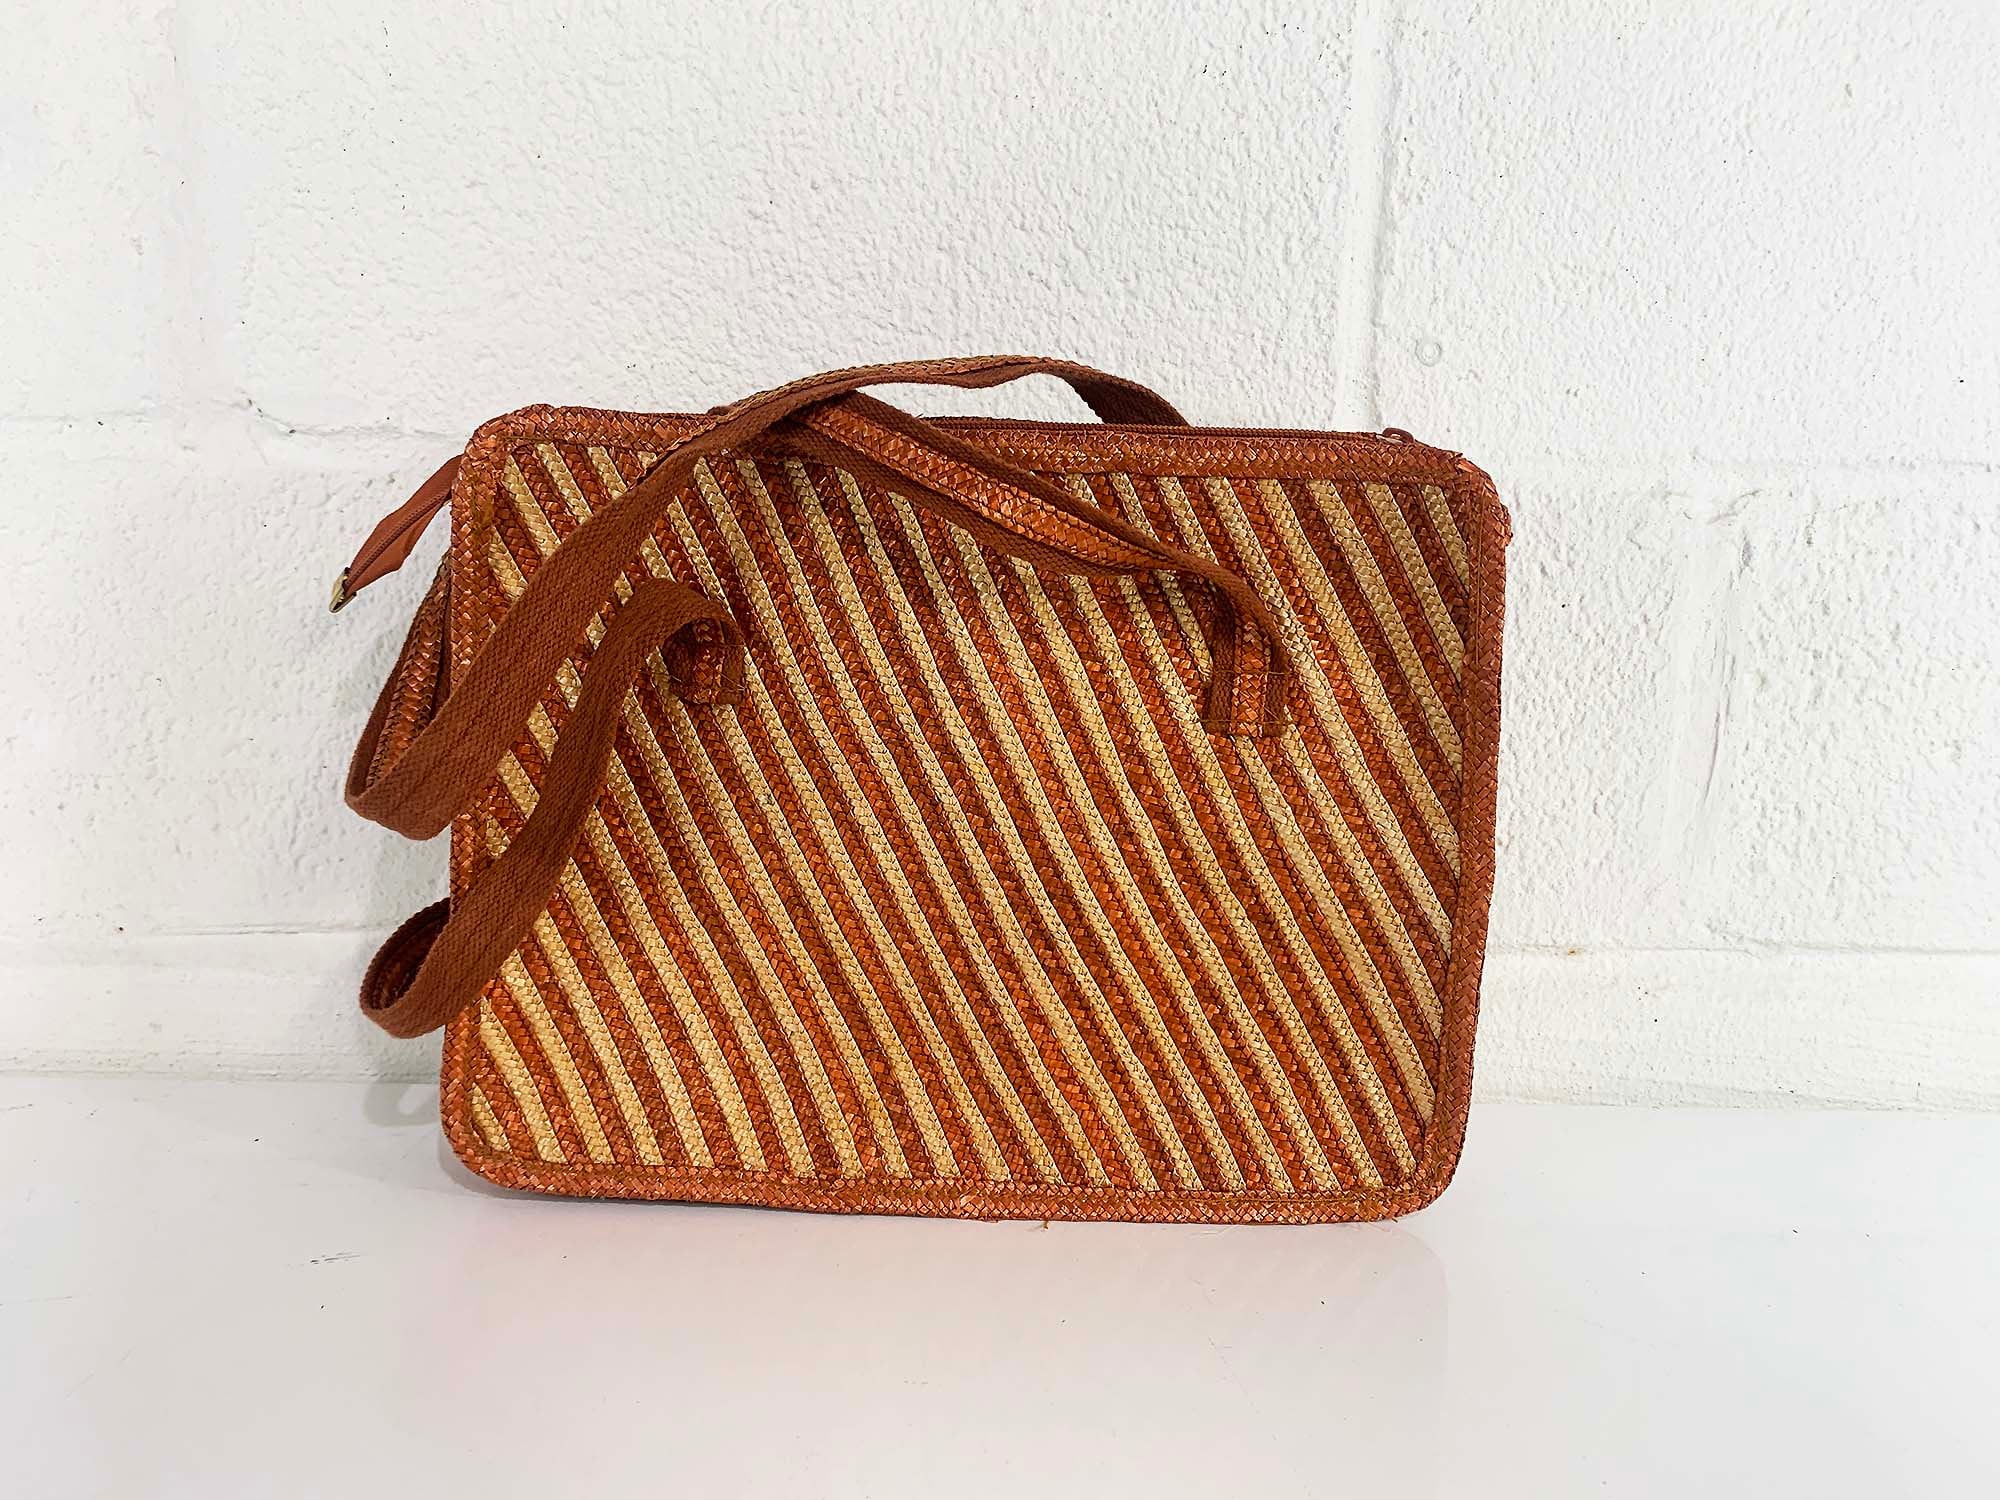 Vintage 80s Handbag / Woven Straw and Leather Bali Bag /